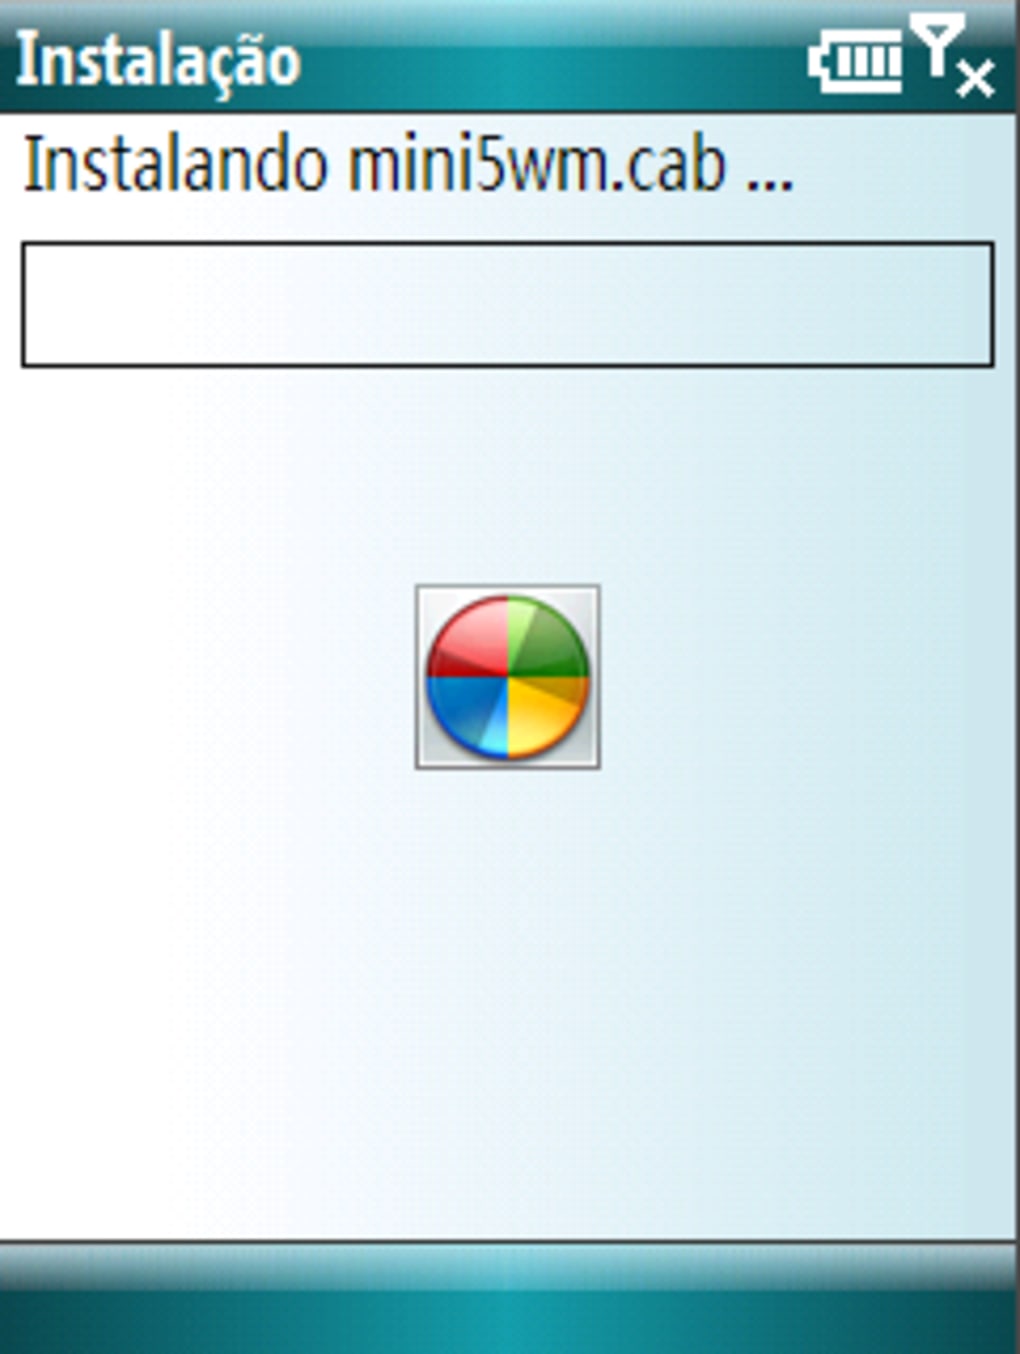 opera mini download windows 7 32 bit